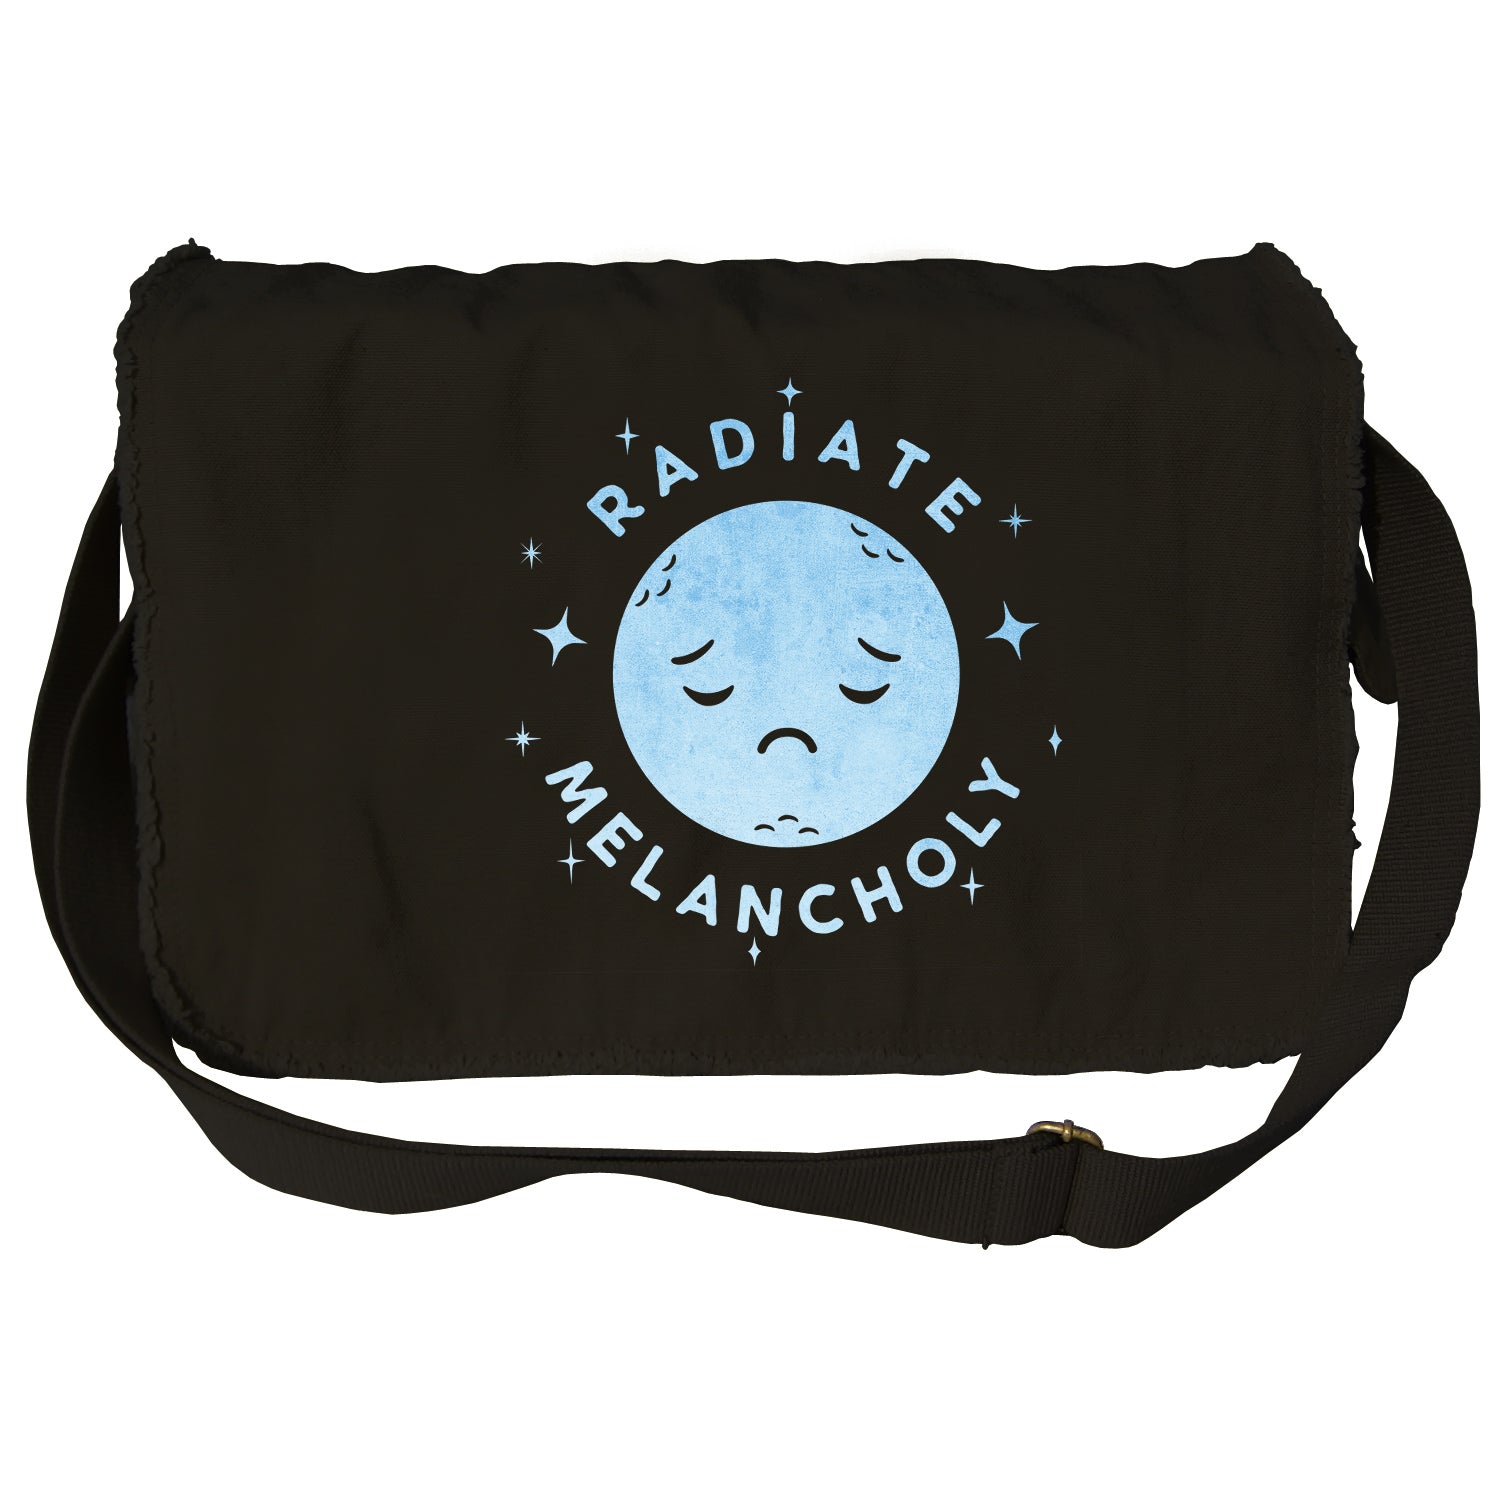 Radiate Melancholy Messenger Bag